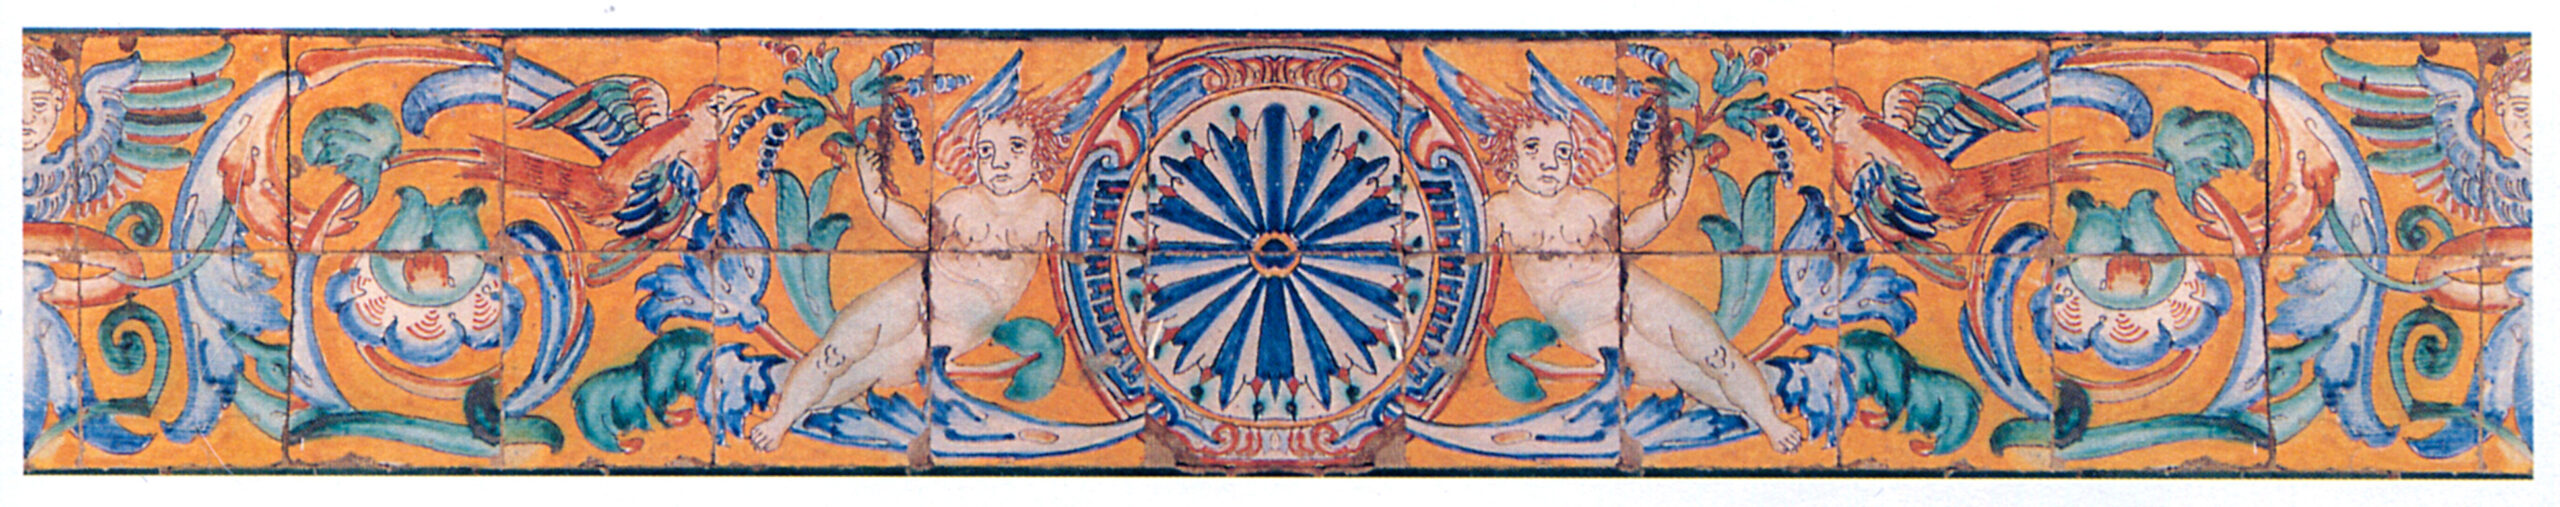 03117. Friso de roleos y cartela circular sostenida por ángeles. Museo de Bellas Artes. Sevilla.